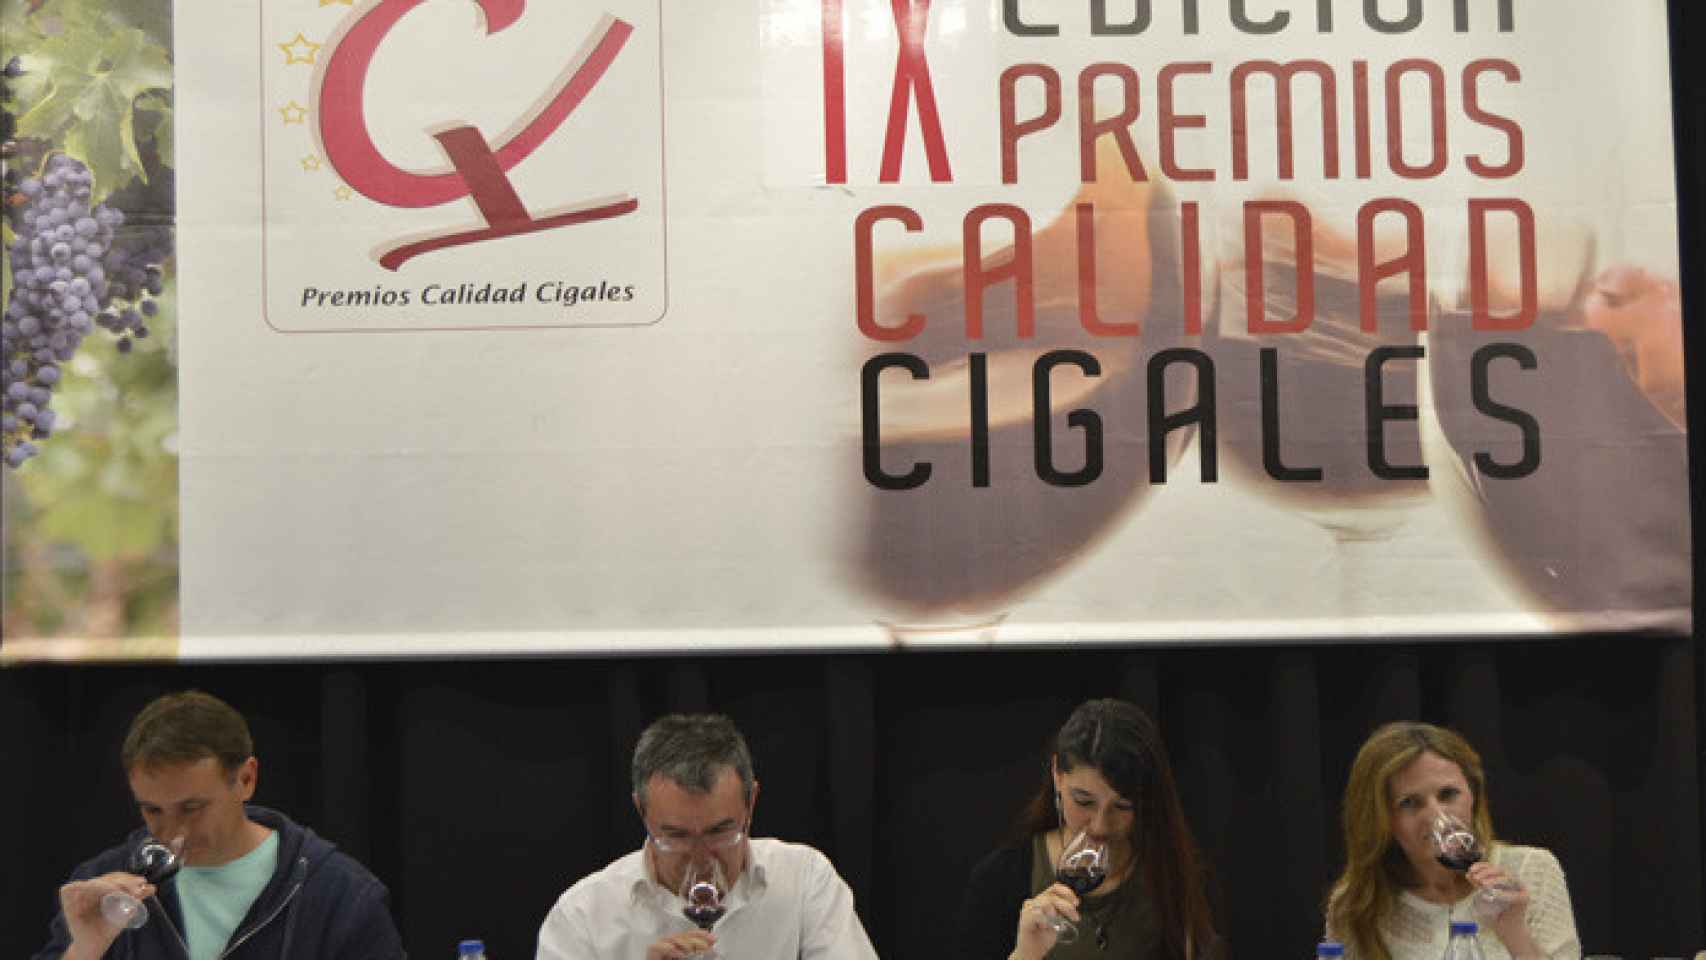 Valladolid-premios-calidad-cigales-vino-enoturismo